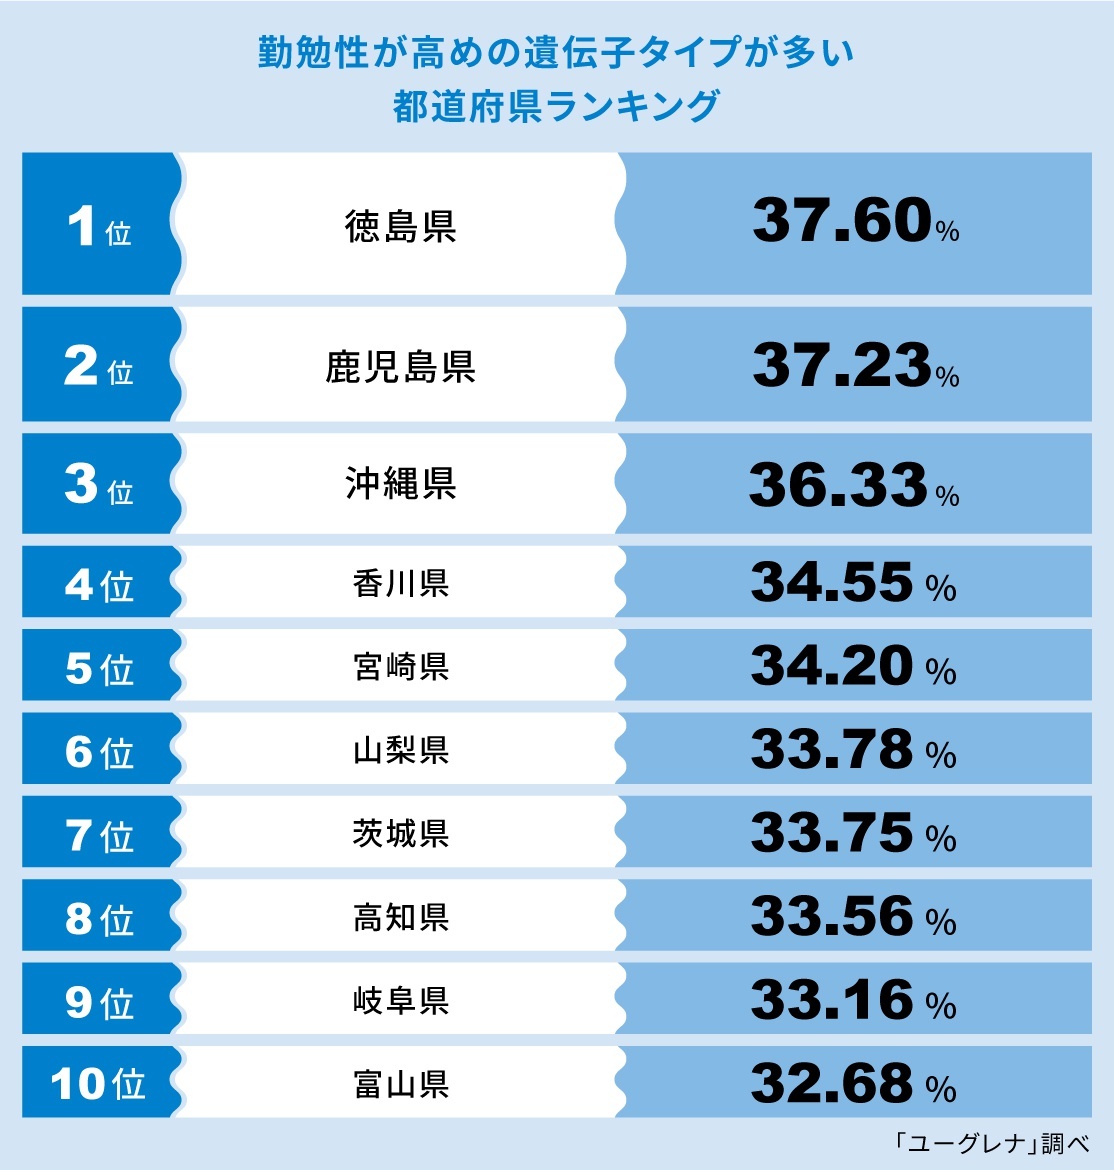 【画像】「勤勉性が高めの遺伝子タイプが多い都道府県ランキング」TOP10はコチラ